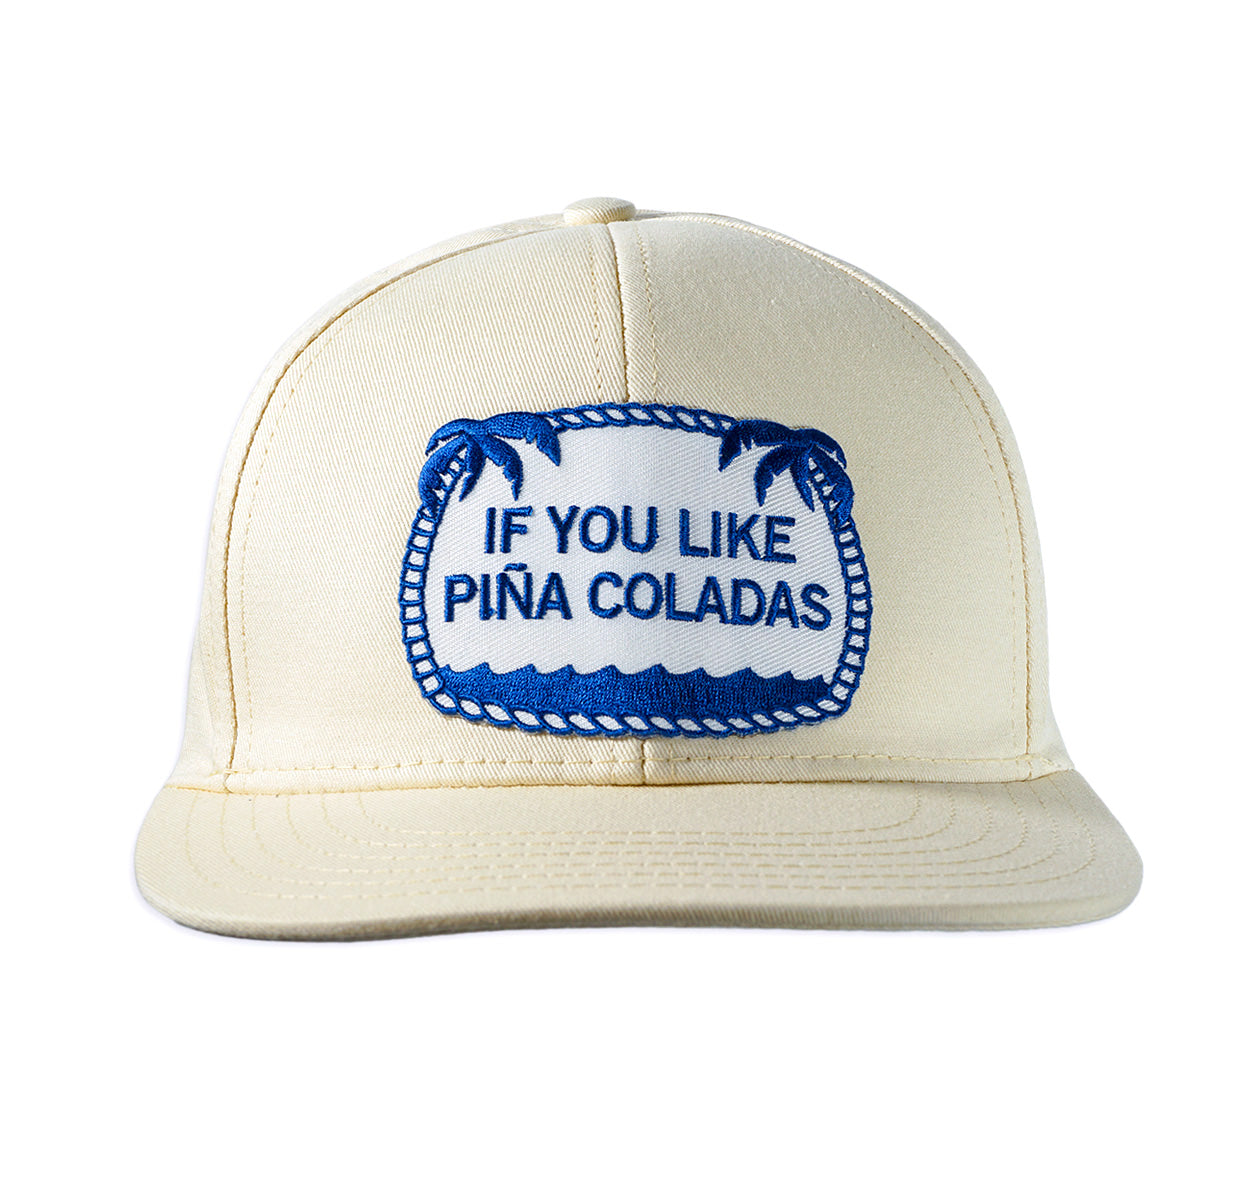 If You Like Piña Coladas ball cap